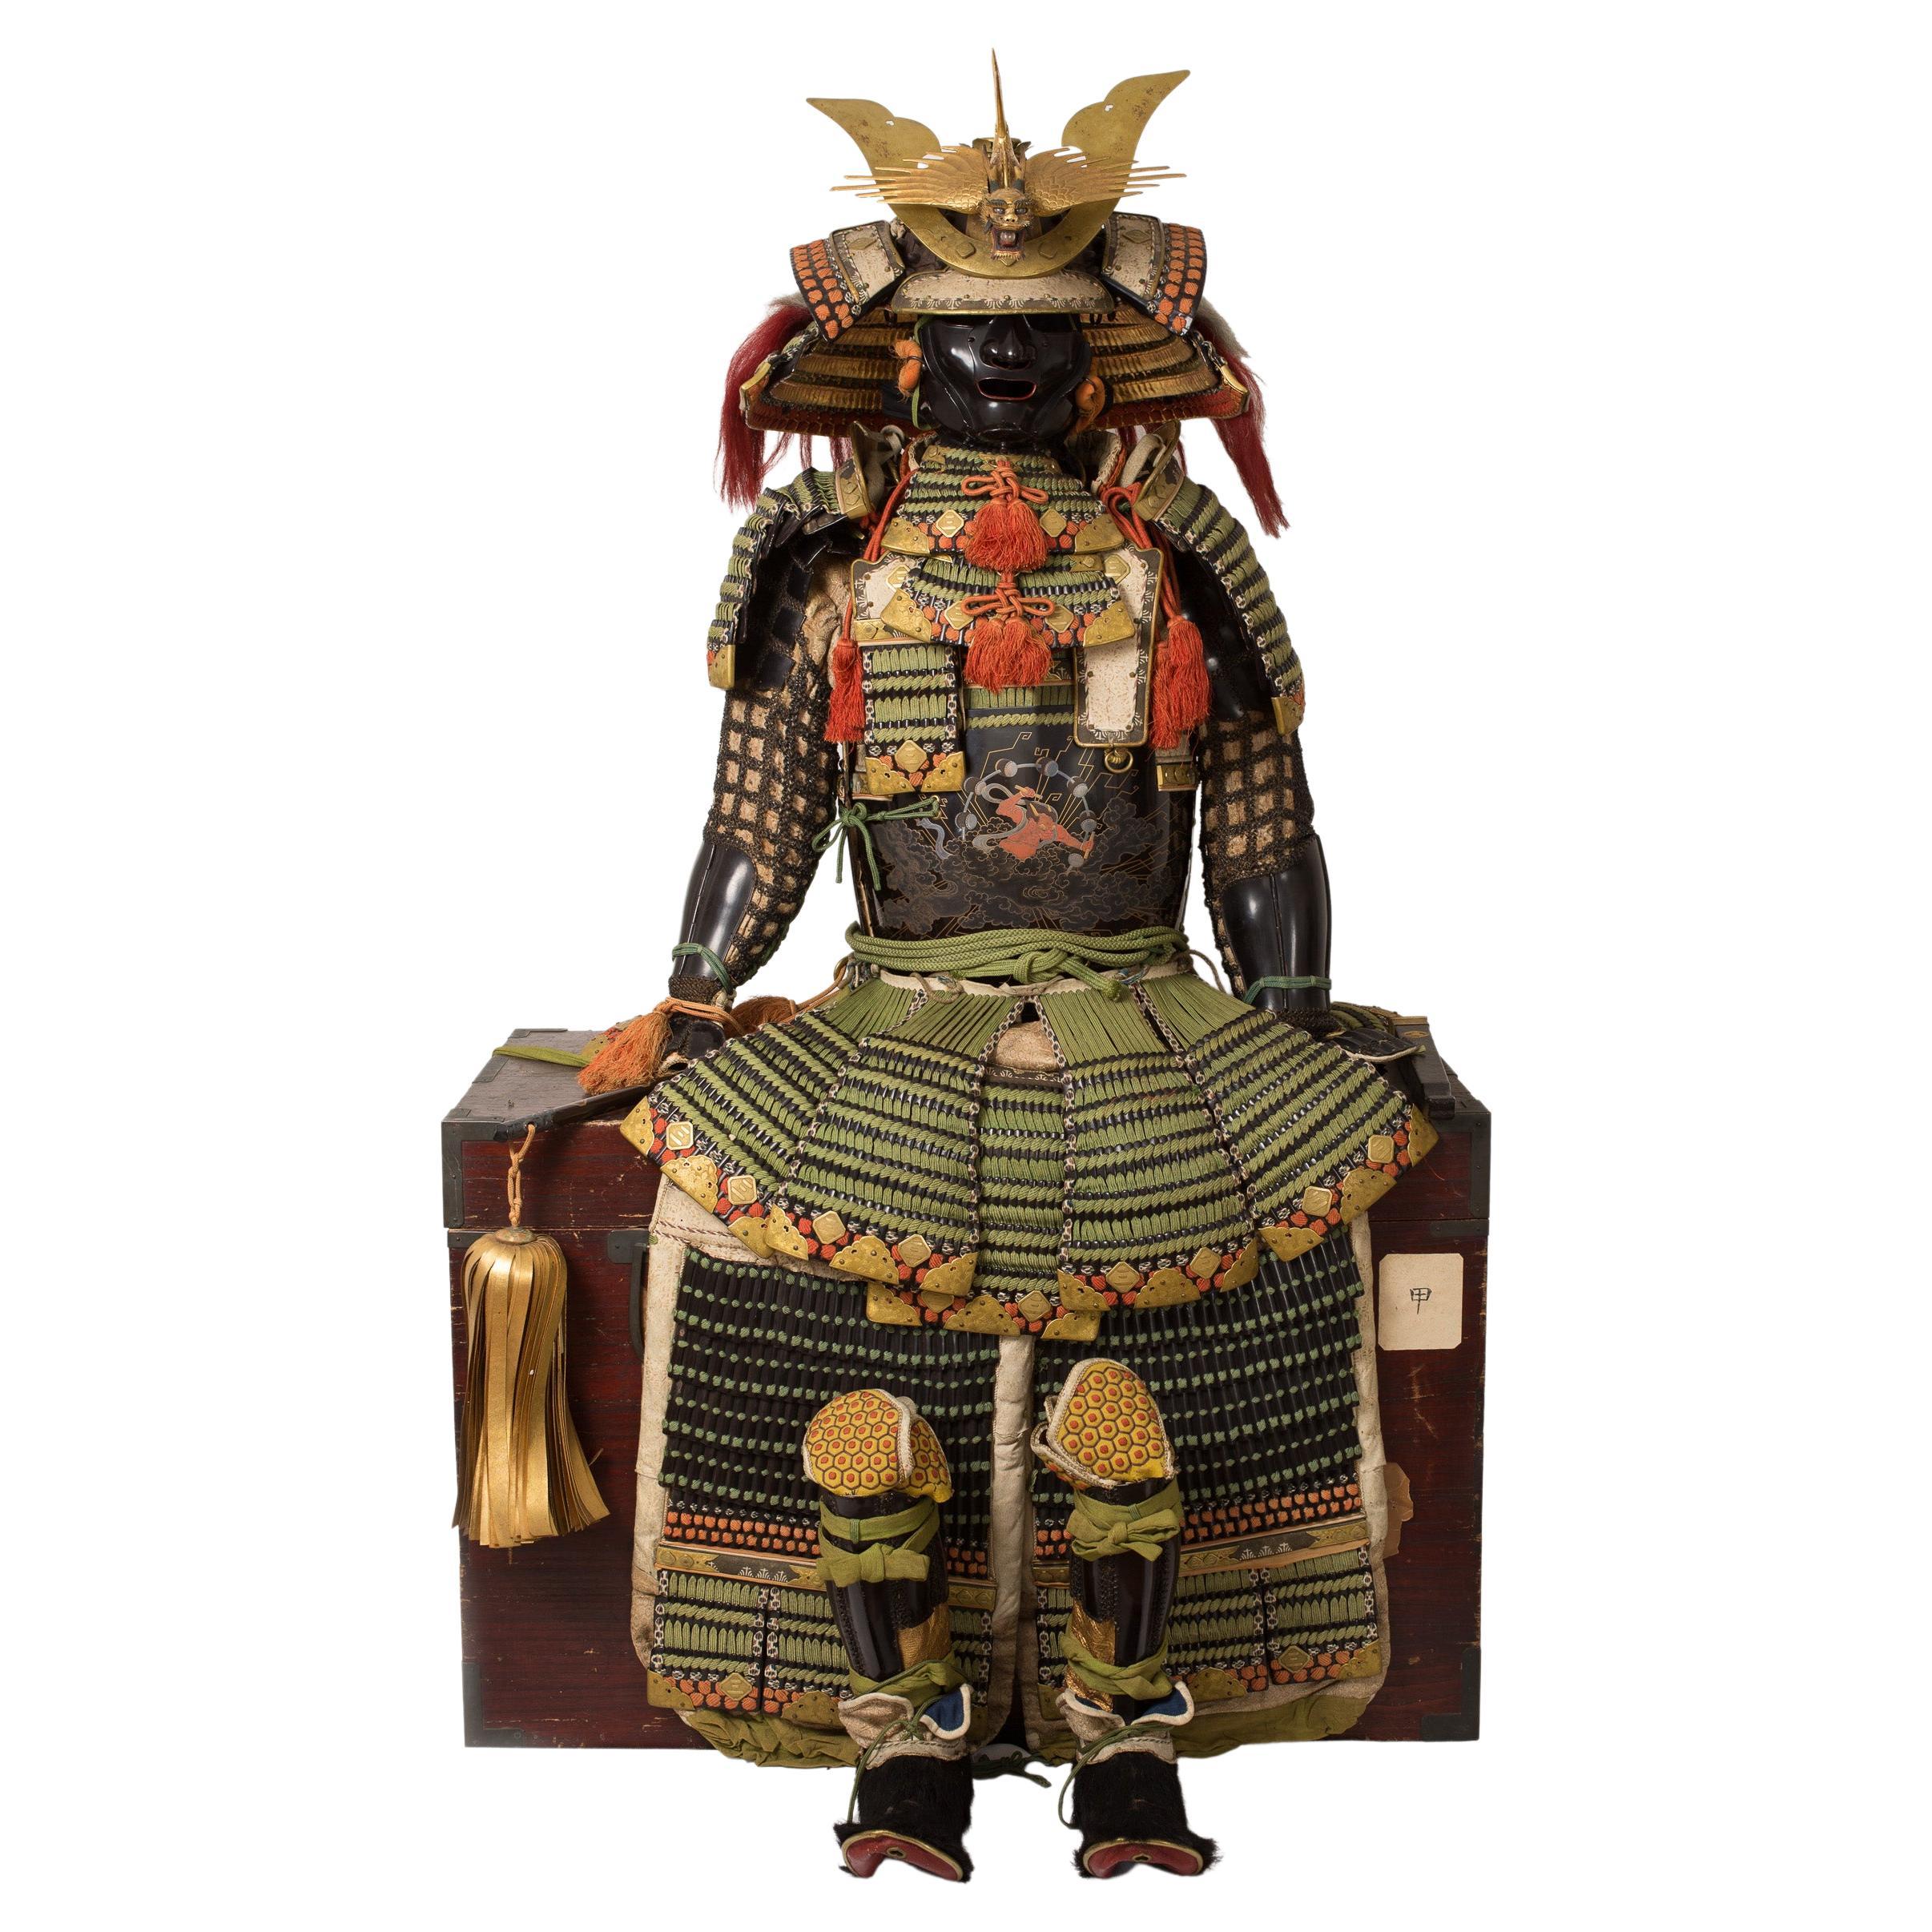 Maki-E Hotoke-Do Tosei Gusoku Samurai Armor Bearing the Kamon of Inaba Family